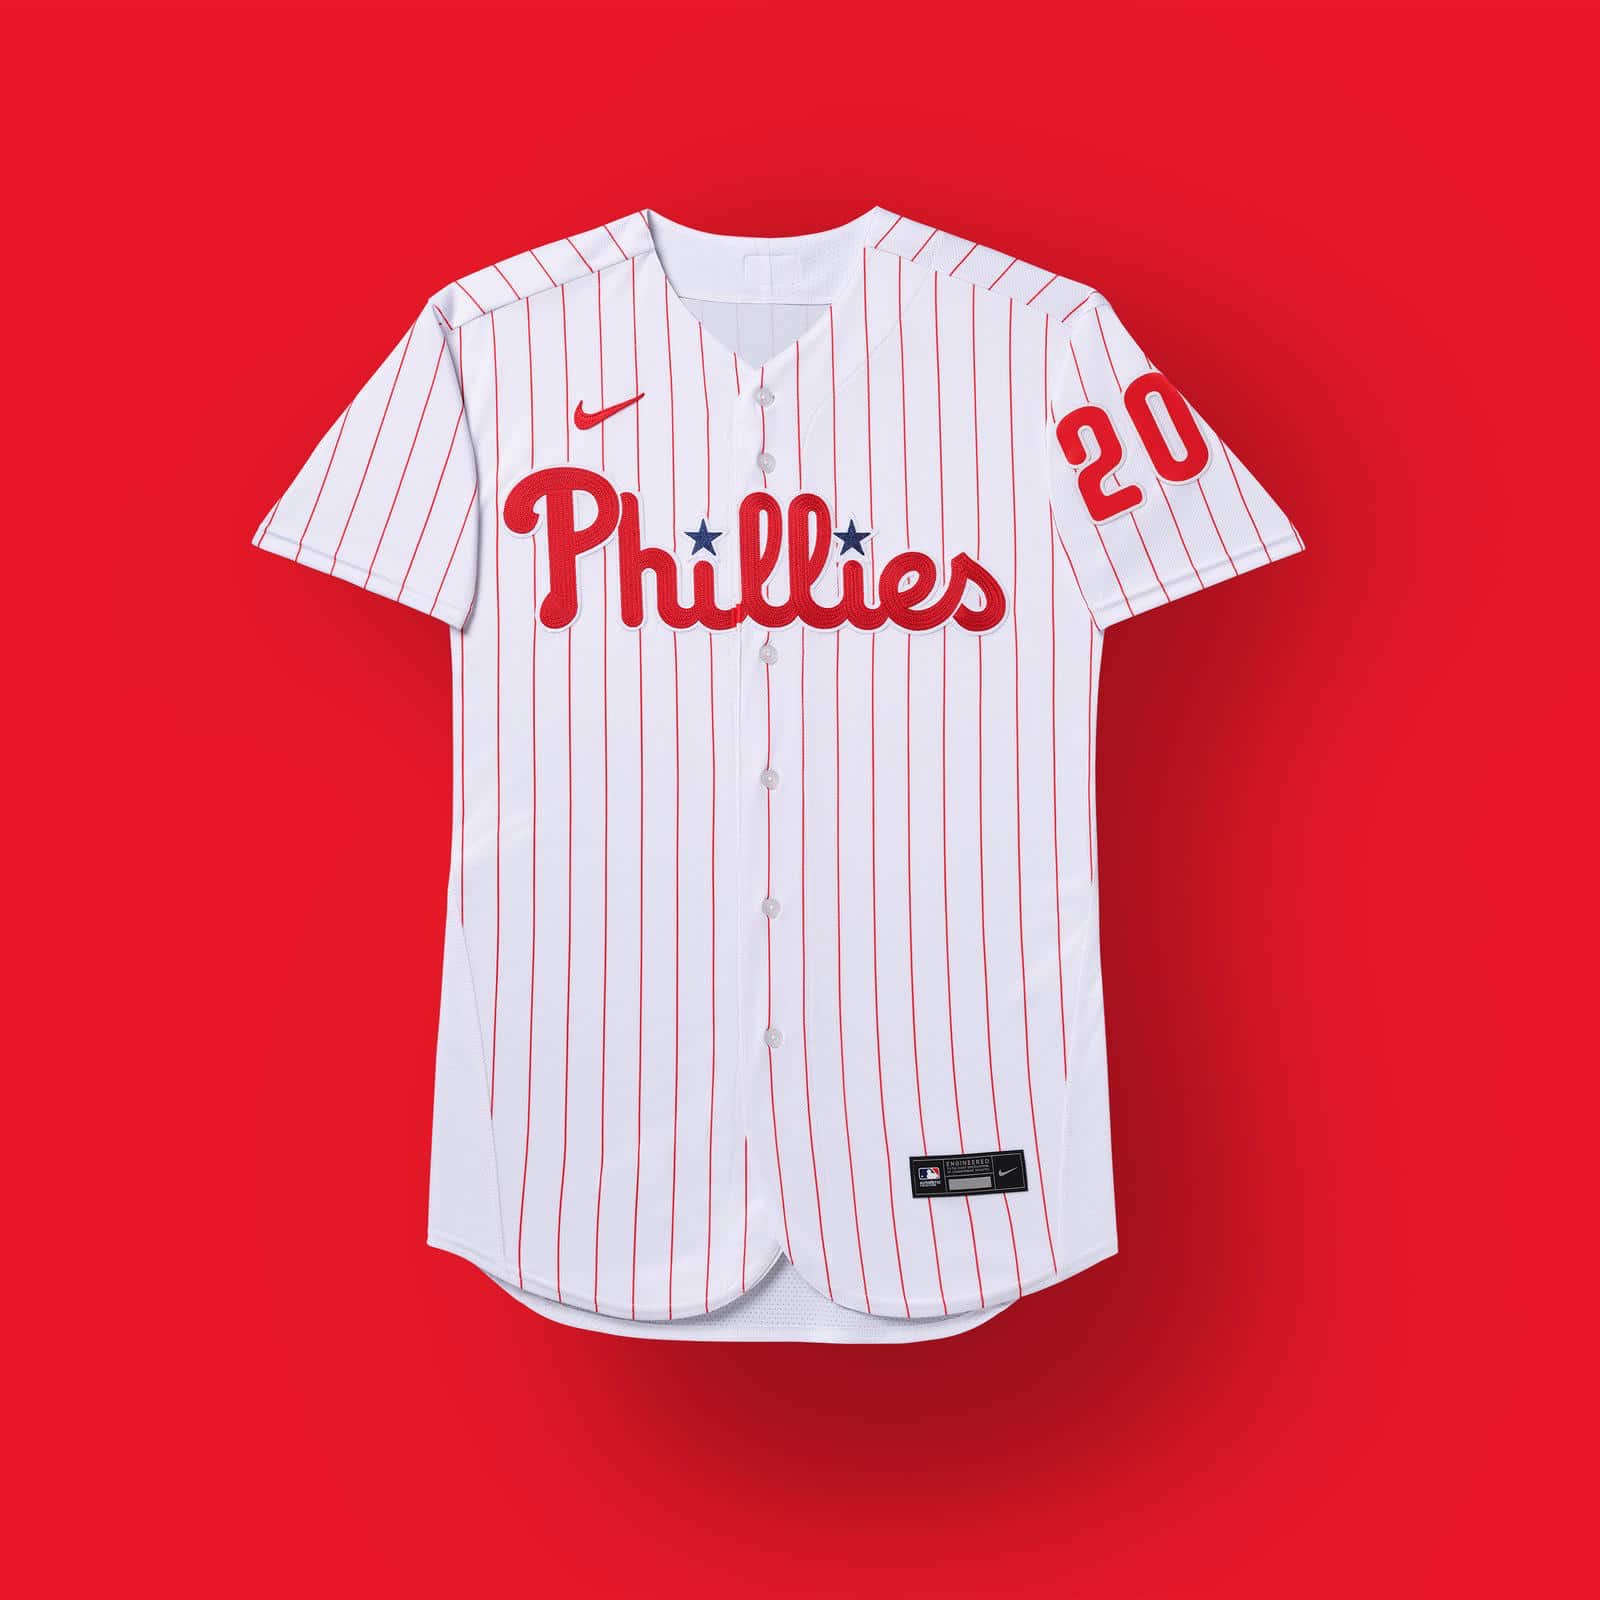 Nuevo uniforme Phillies temporada 2020 Grandes Ligas